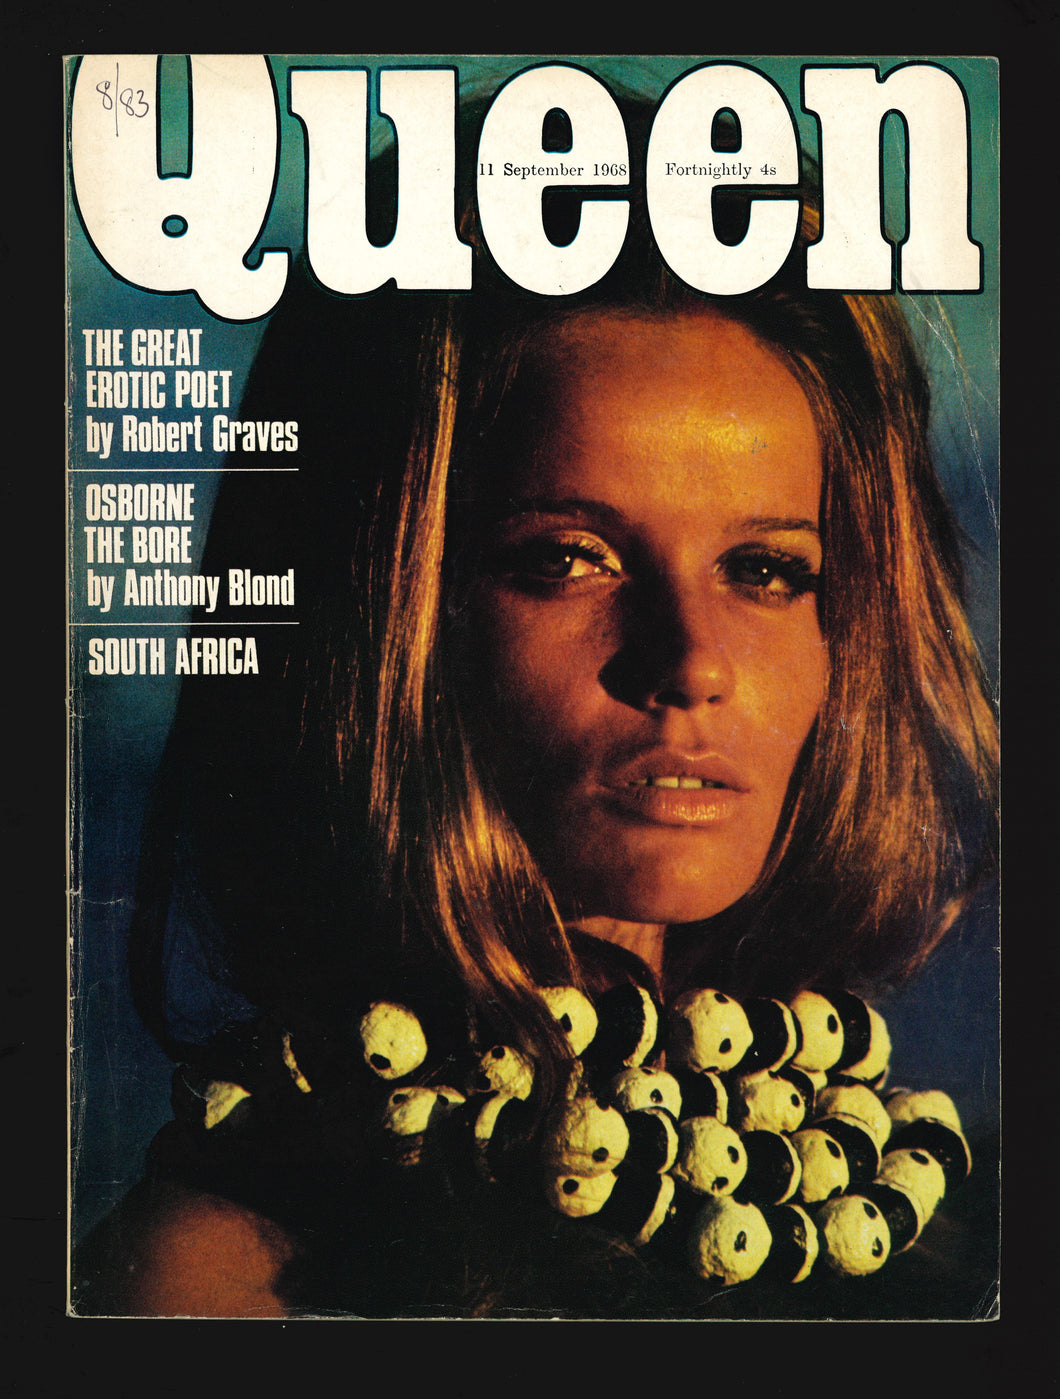 Queen Sept 11 1968 - Veruschka